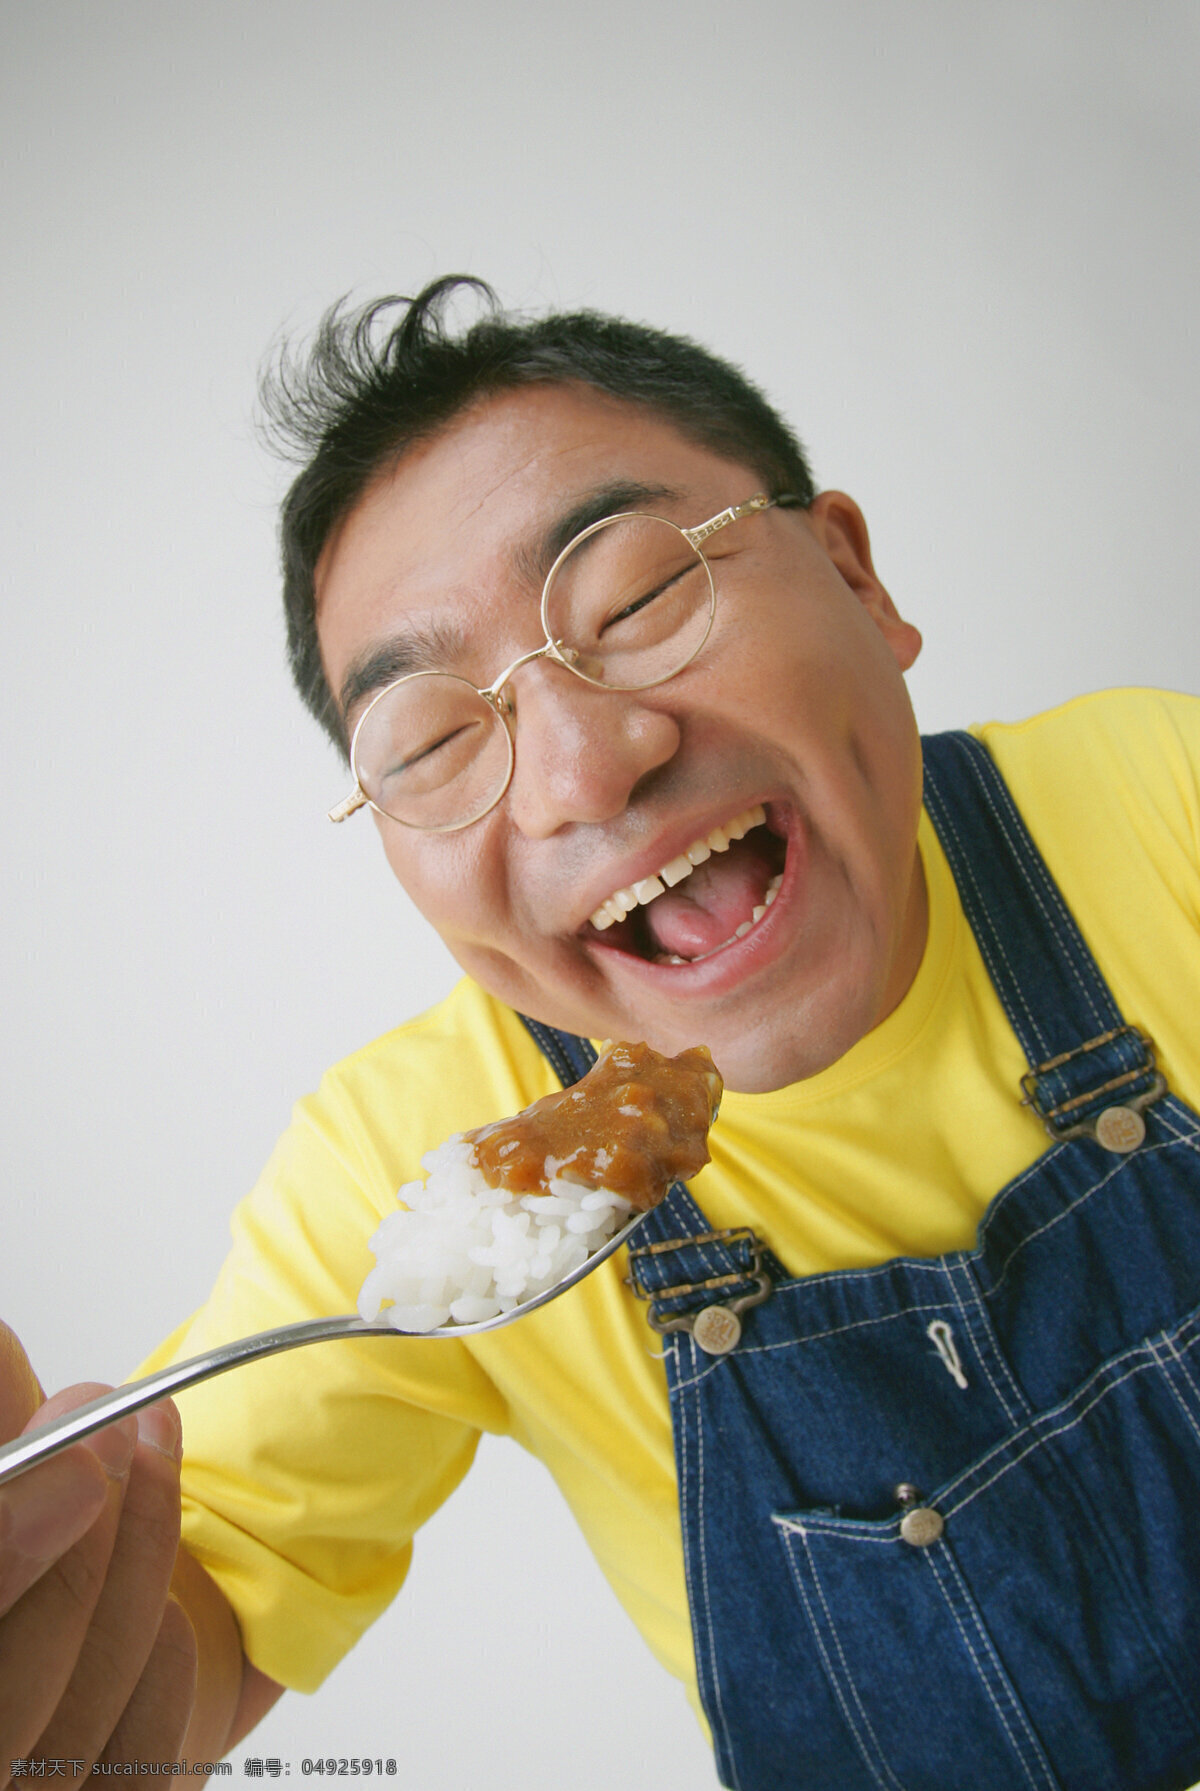 吃饭 男人 美味 好吃 食物 可口 诱人 张大嘴巴 夸张表情 男性 米饭 男人图片 人物图片